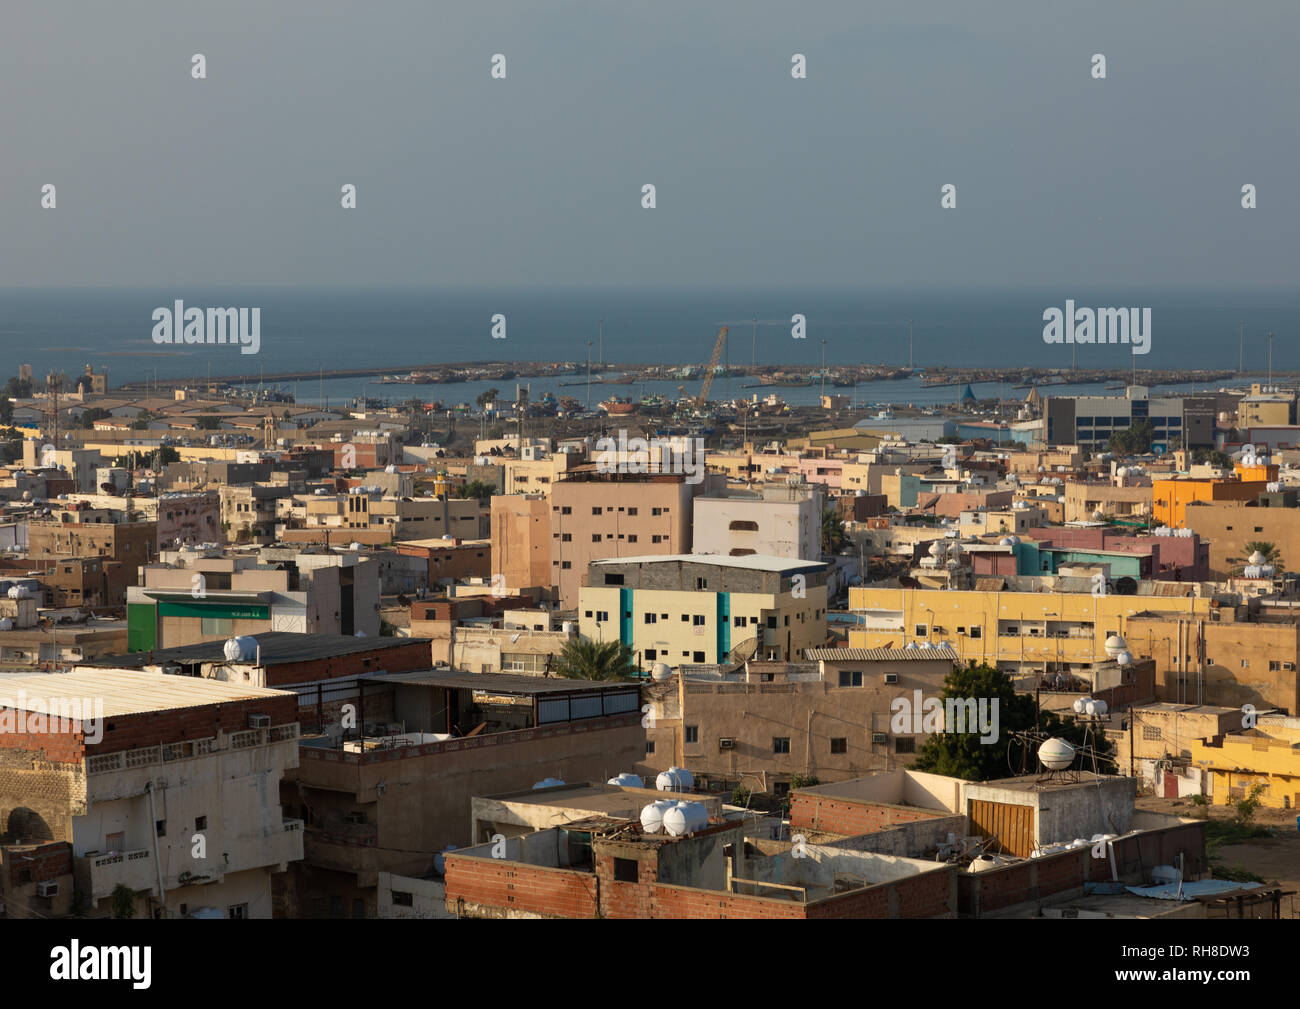 Ciudad, provincia de Jizan Jizan, Arabia Saudita Foto de stock